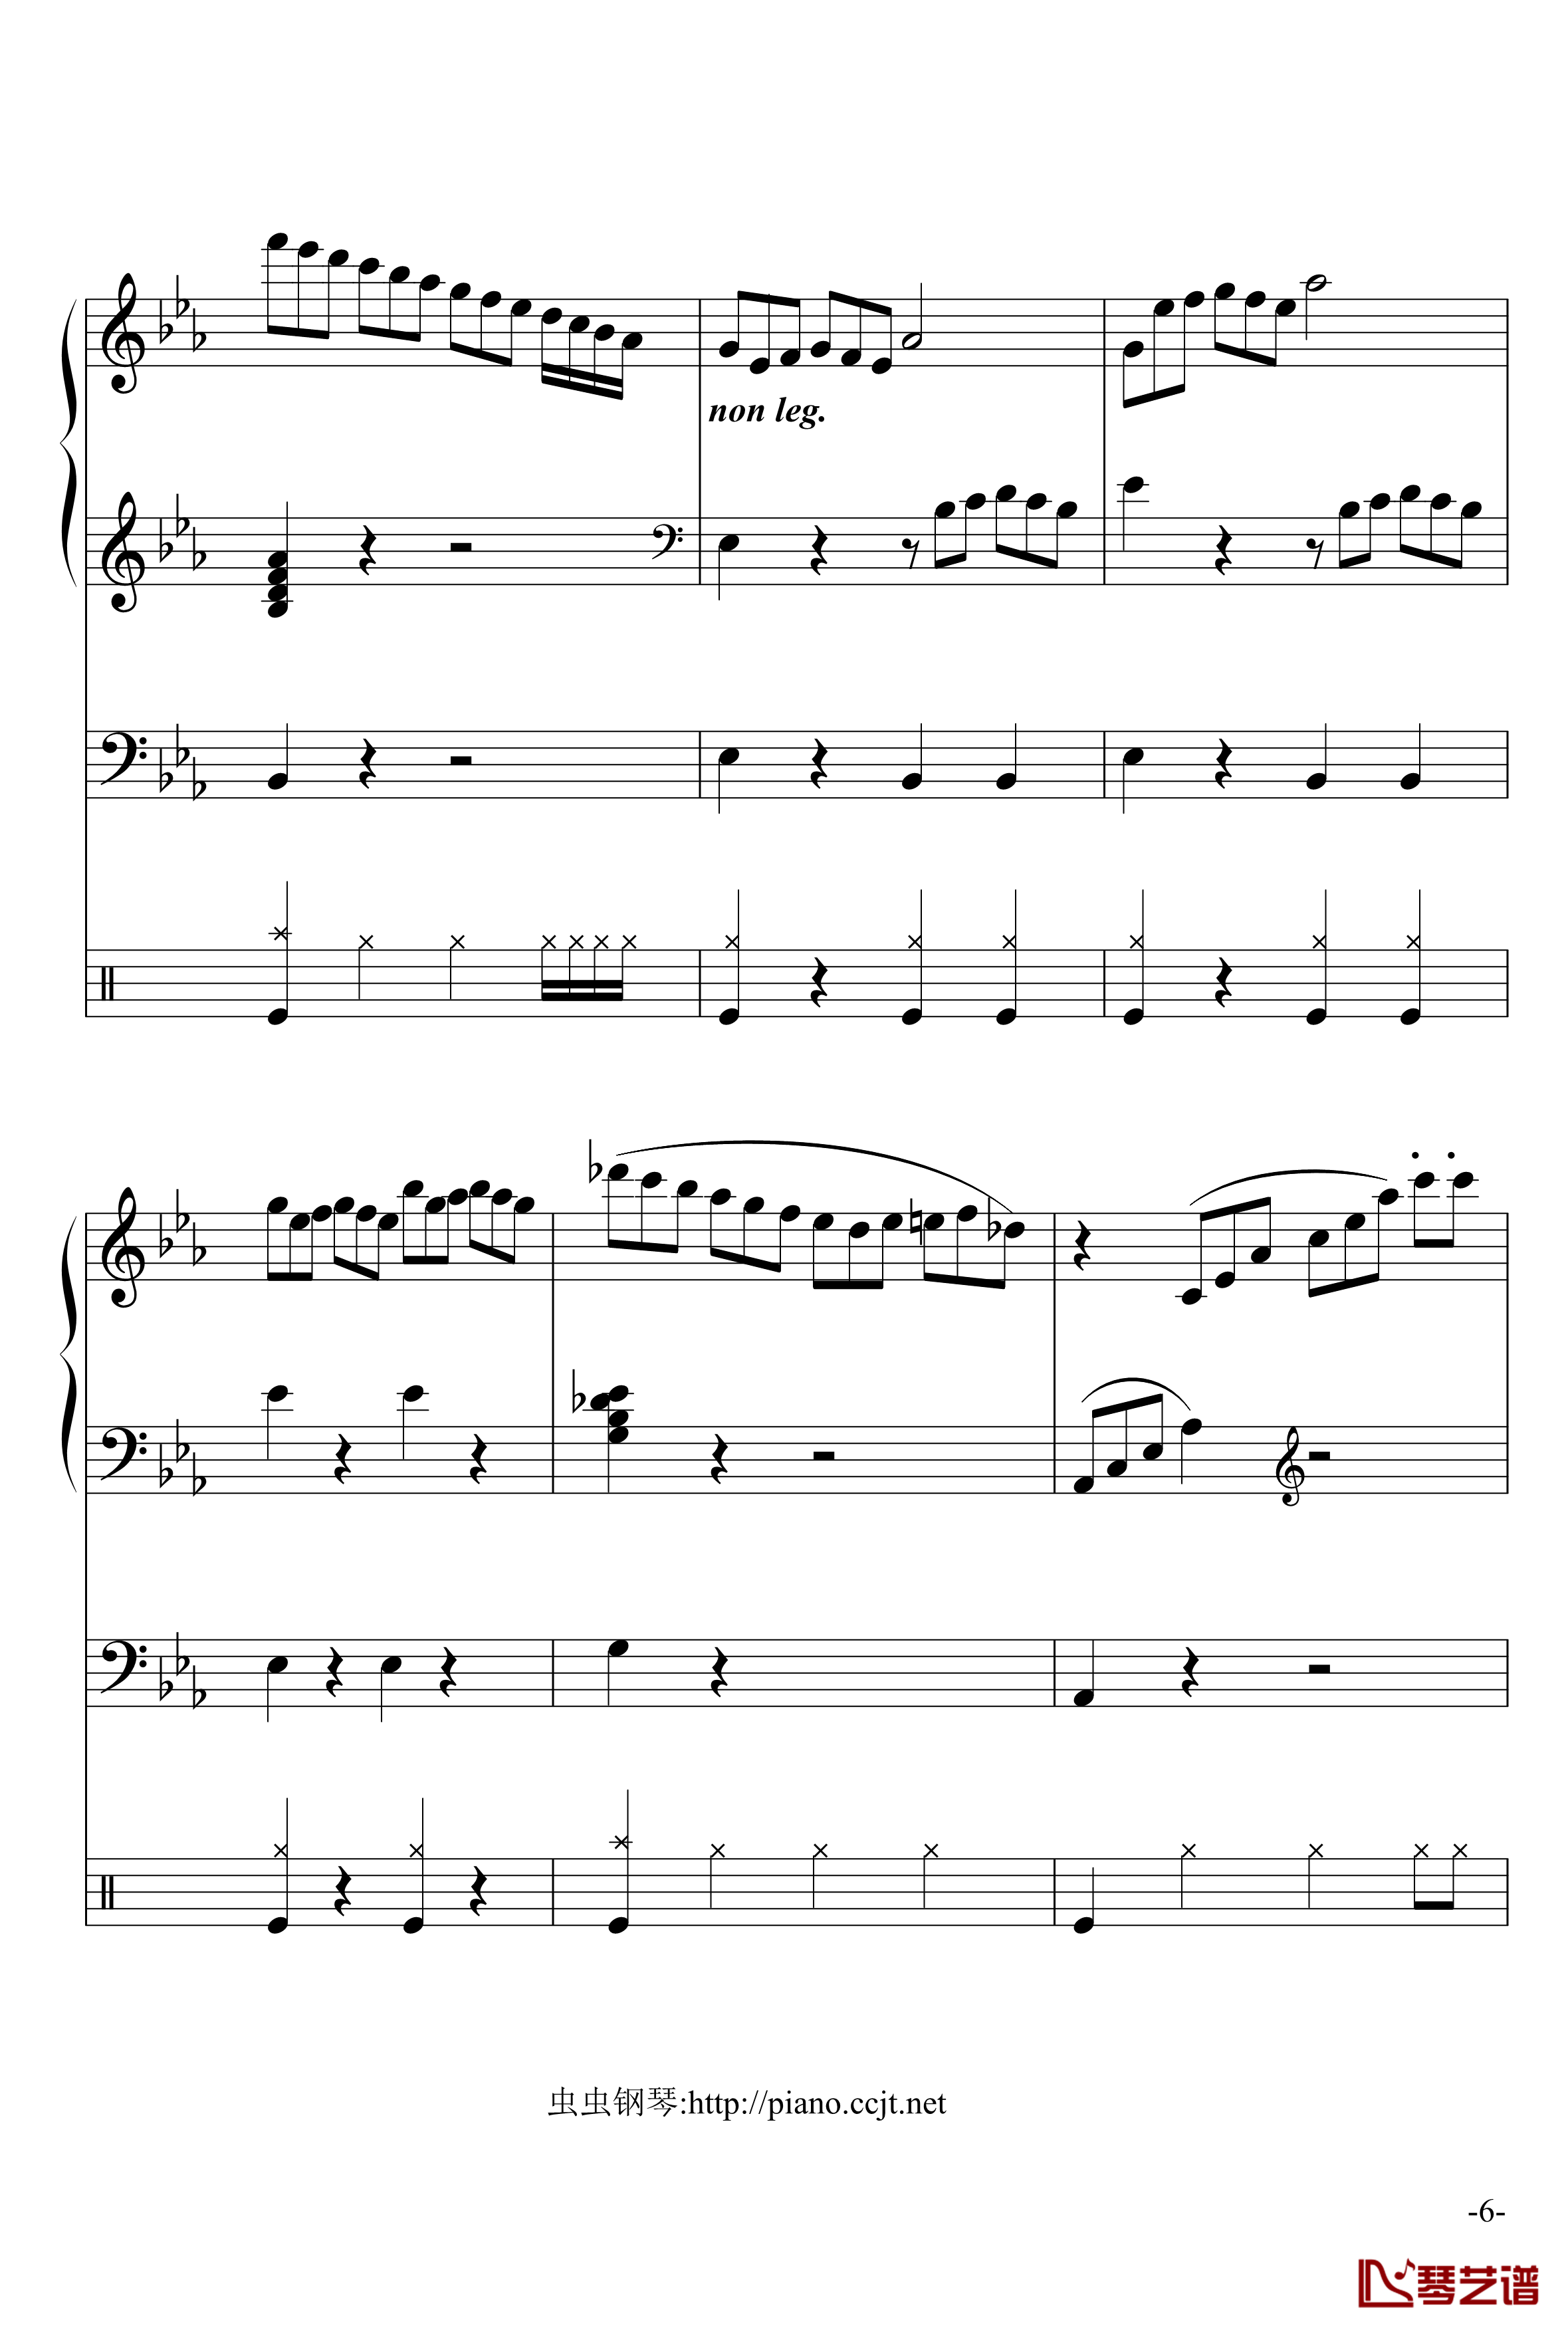 悲怆奏鸣曲钢琴谱-加小乐队-贝多芬-beethoven6